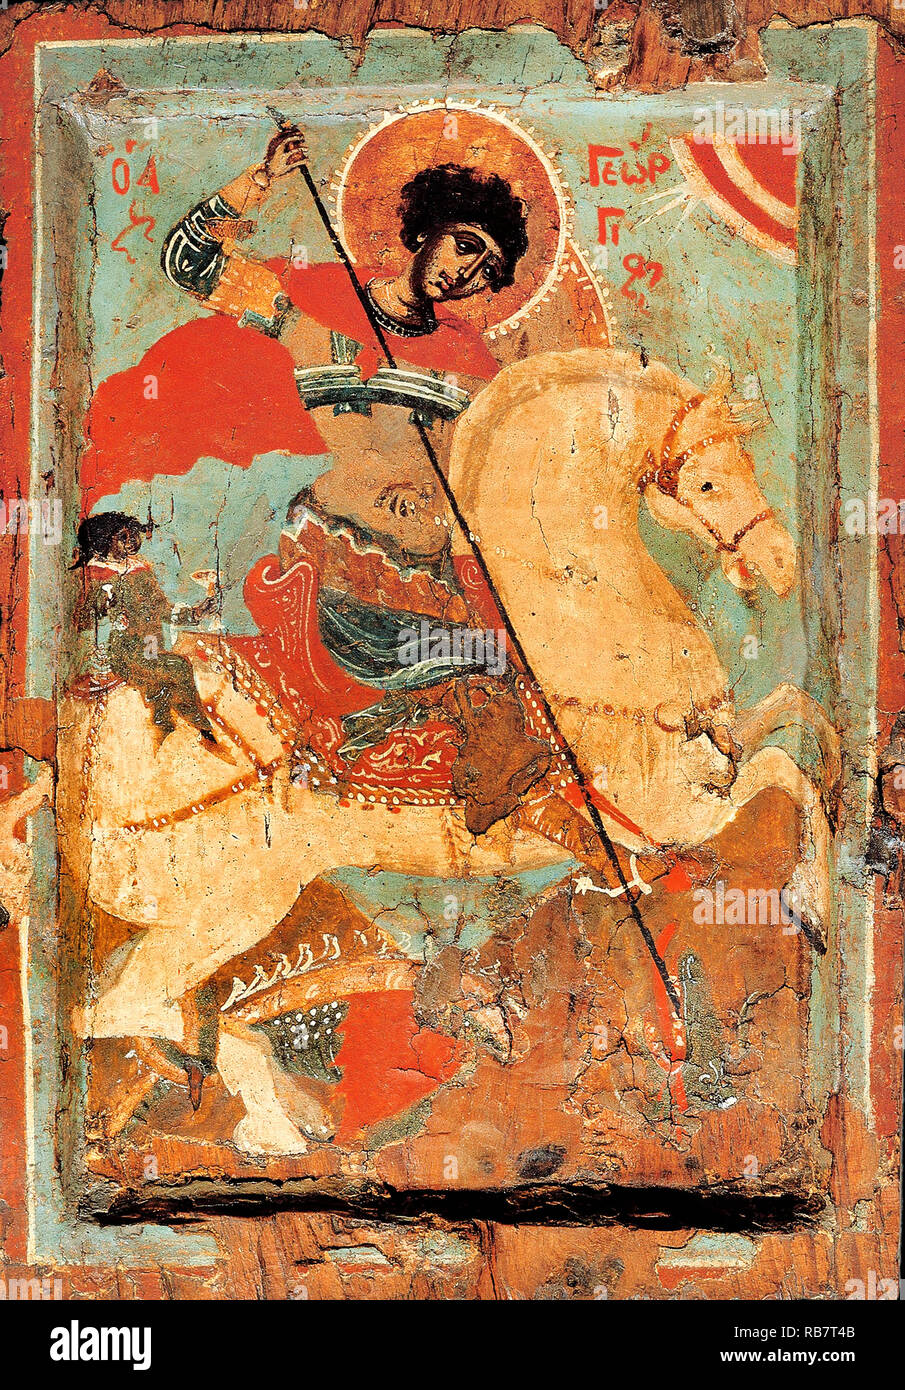 Mazedonische Workshop, St. George und der Drache - Slayer auf Pferd, ca. 1550-1599 Symbol, Benaki Museum, Athen, Griechenland. Stockfoto